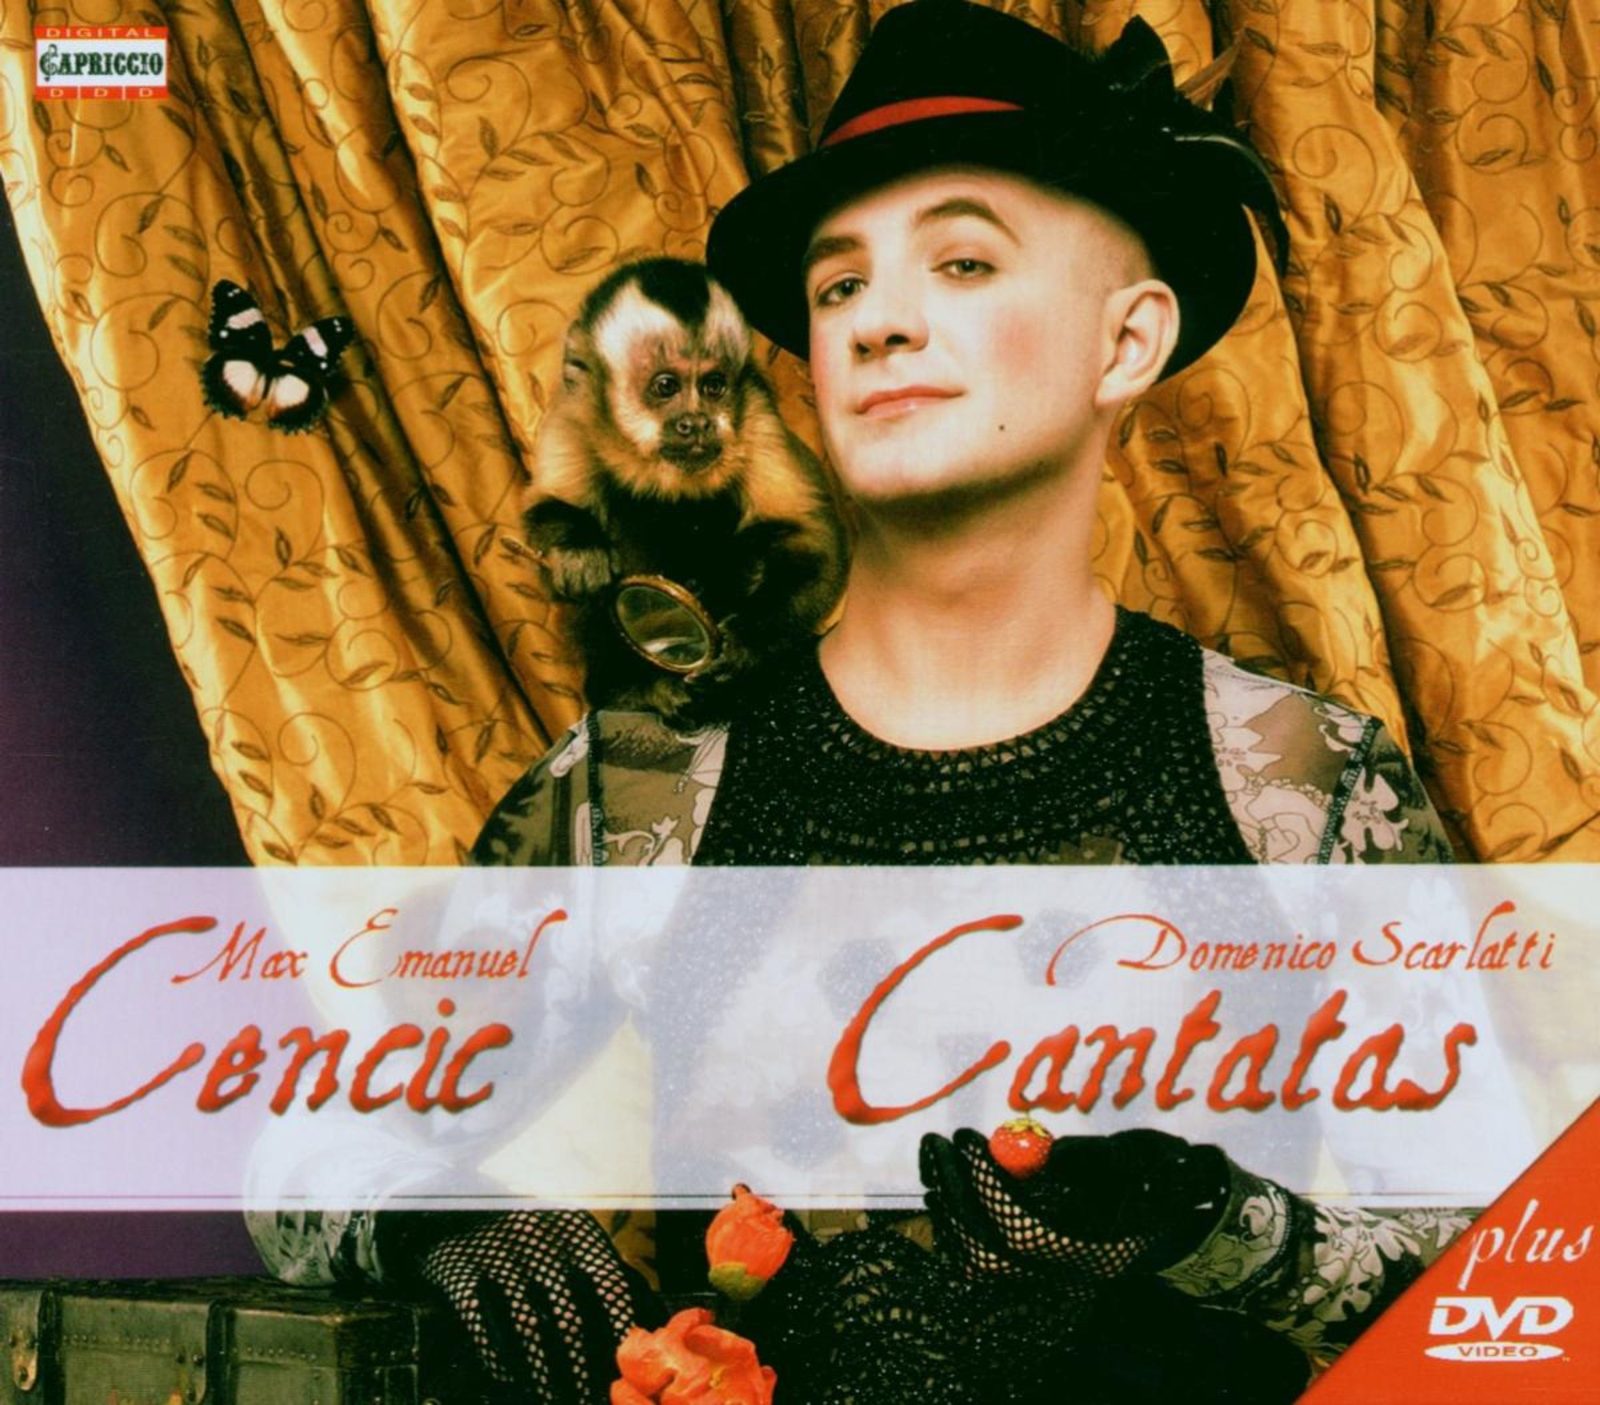 Max Emanuel Cencic CD - Cantatas